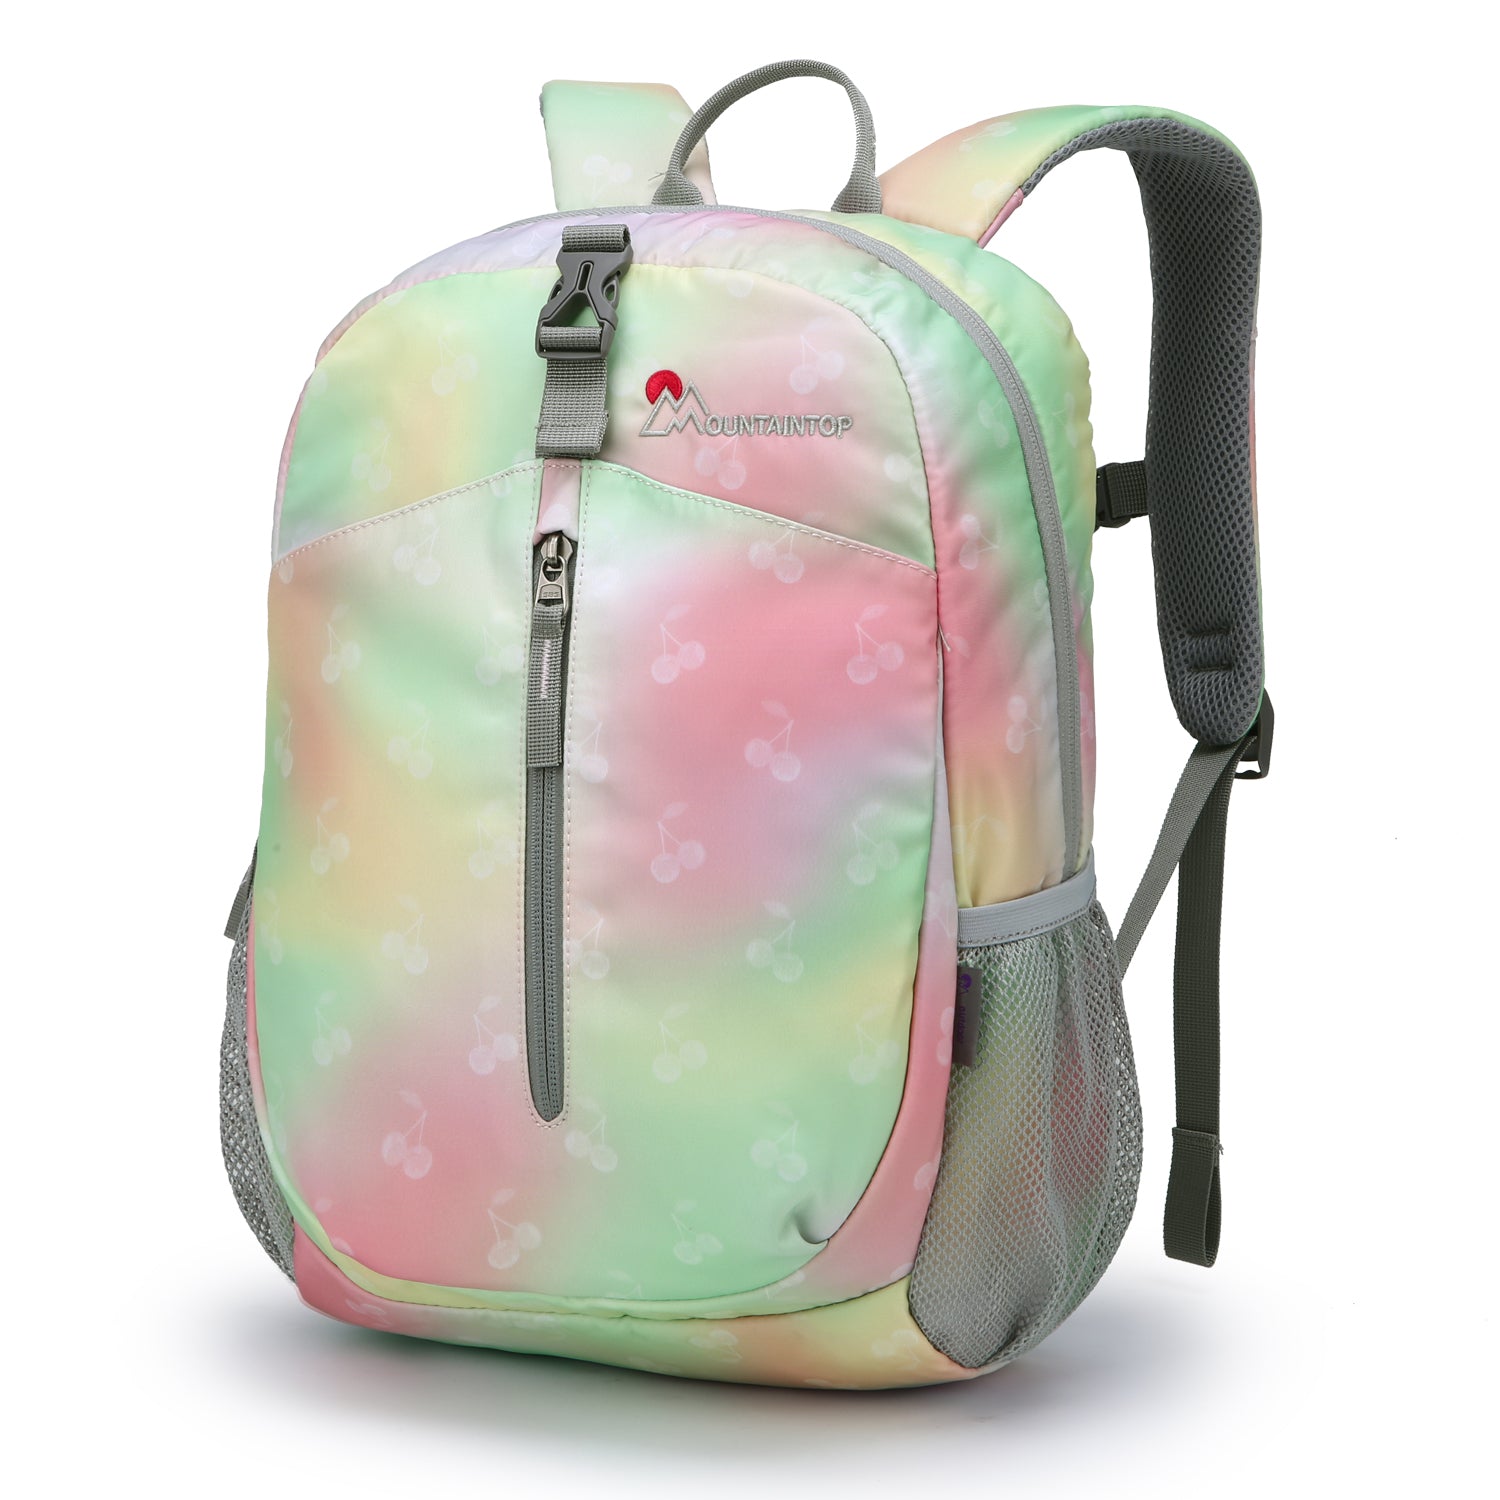 Cherry Children's Backpack,toddler backpack  for girls